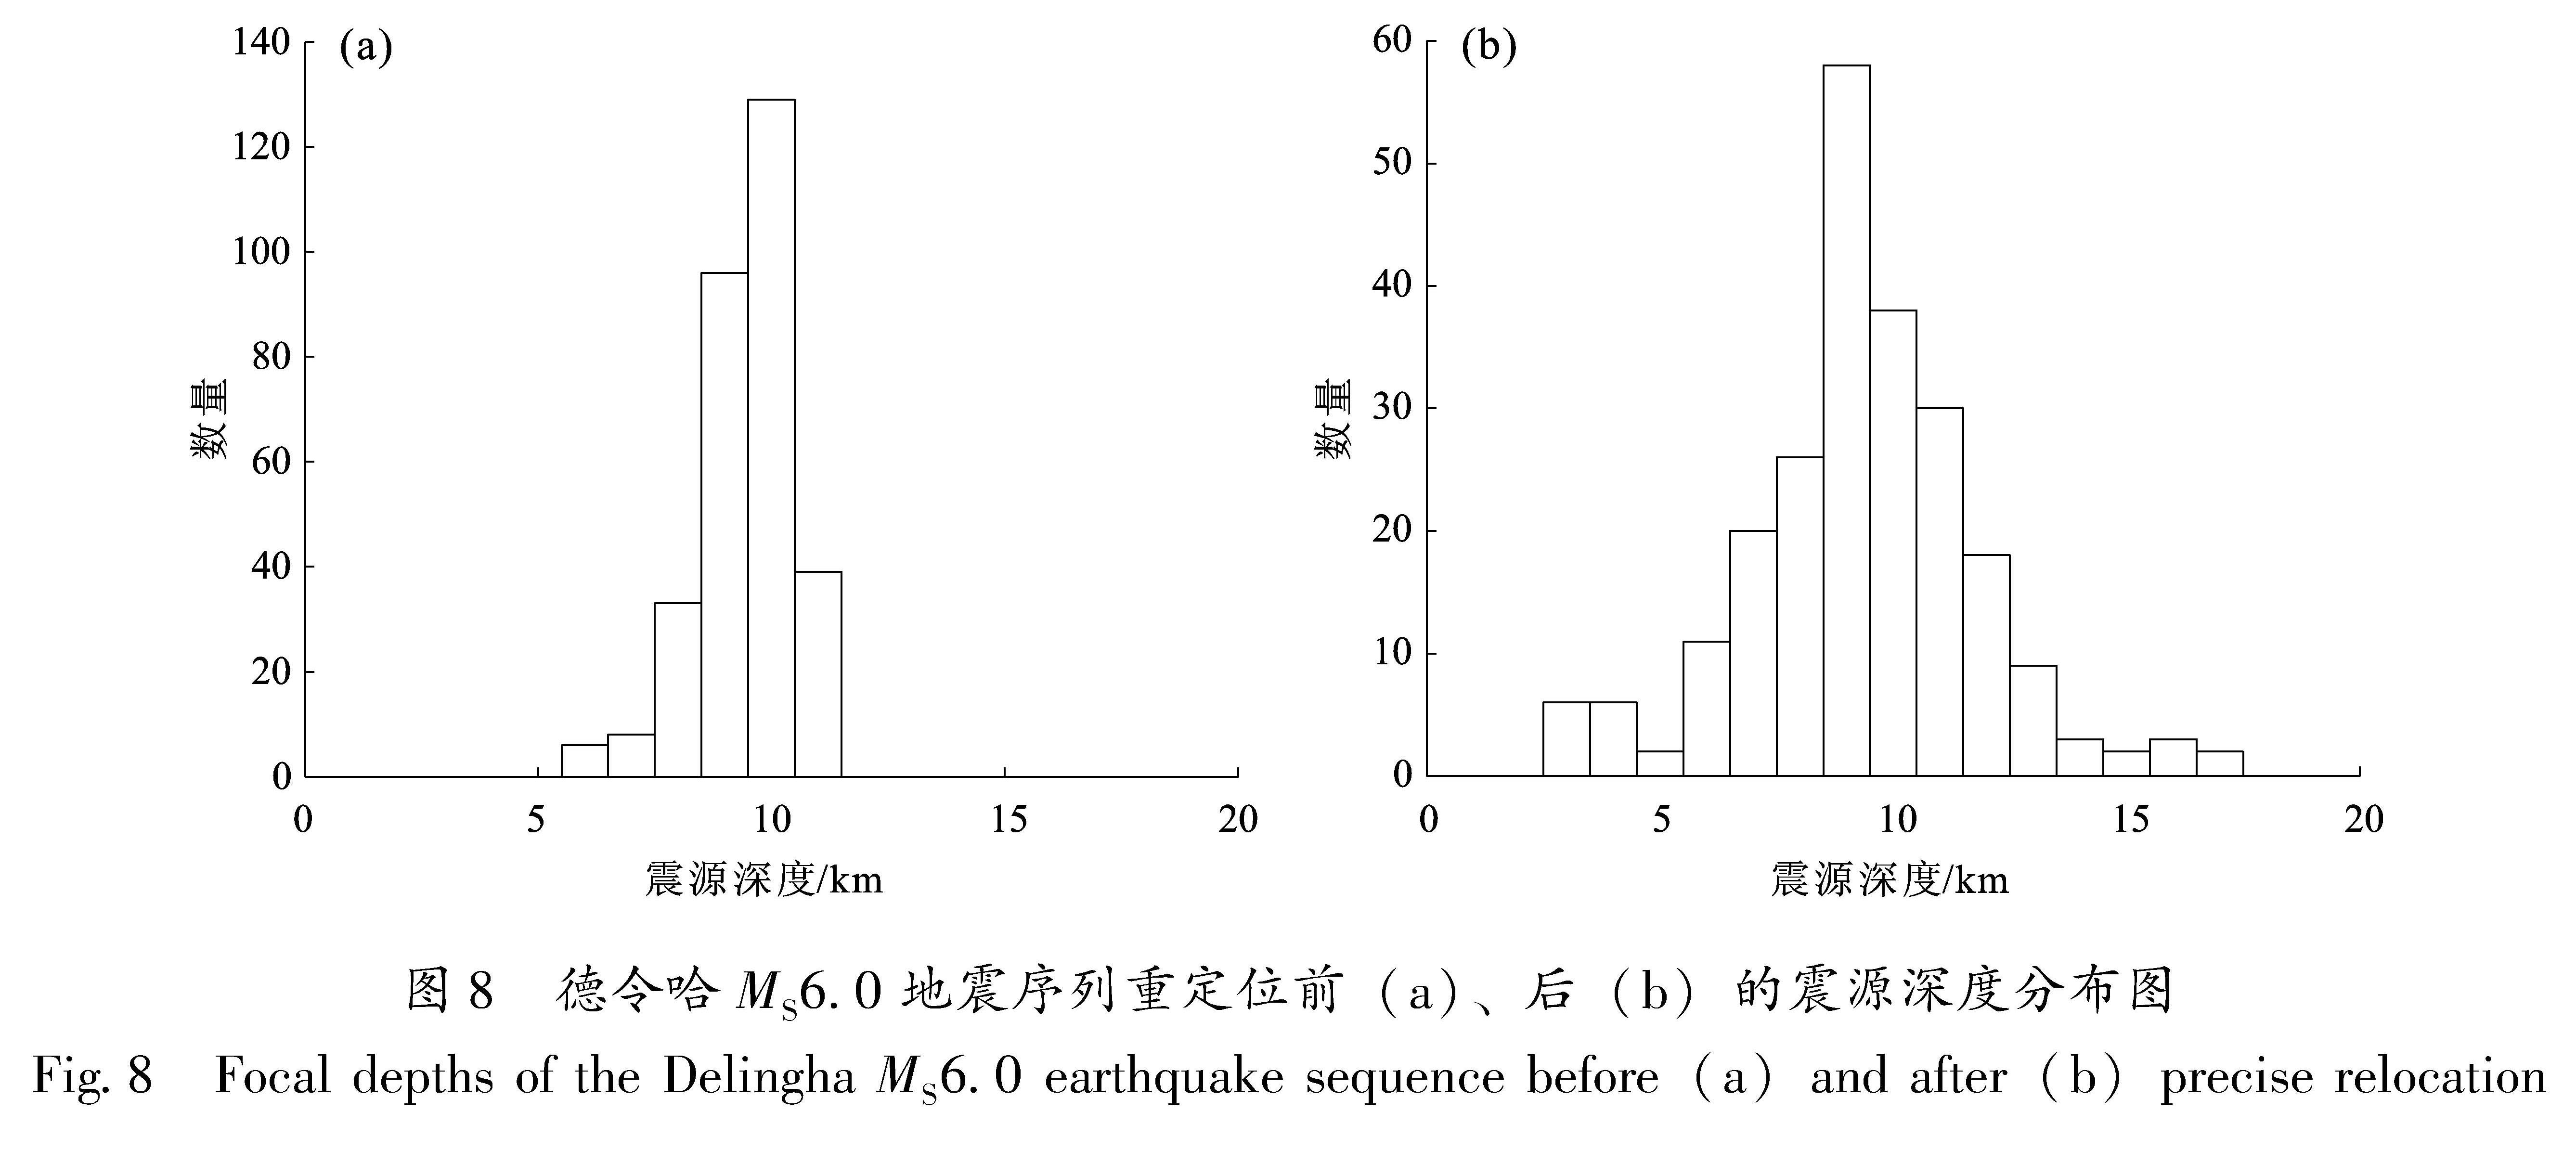 图8 德令哈MS6.0地震序列重定位前(a)、后(b)的震源深度分布图<br/>Fig.8 Focal depths of the Delingha MS6.0 earthquake sequence before(a)and after(b)precise relocation